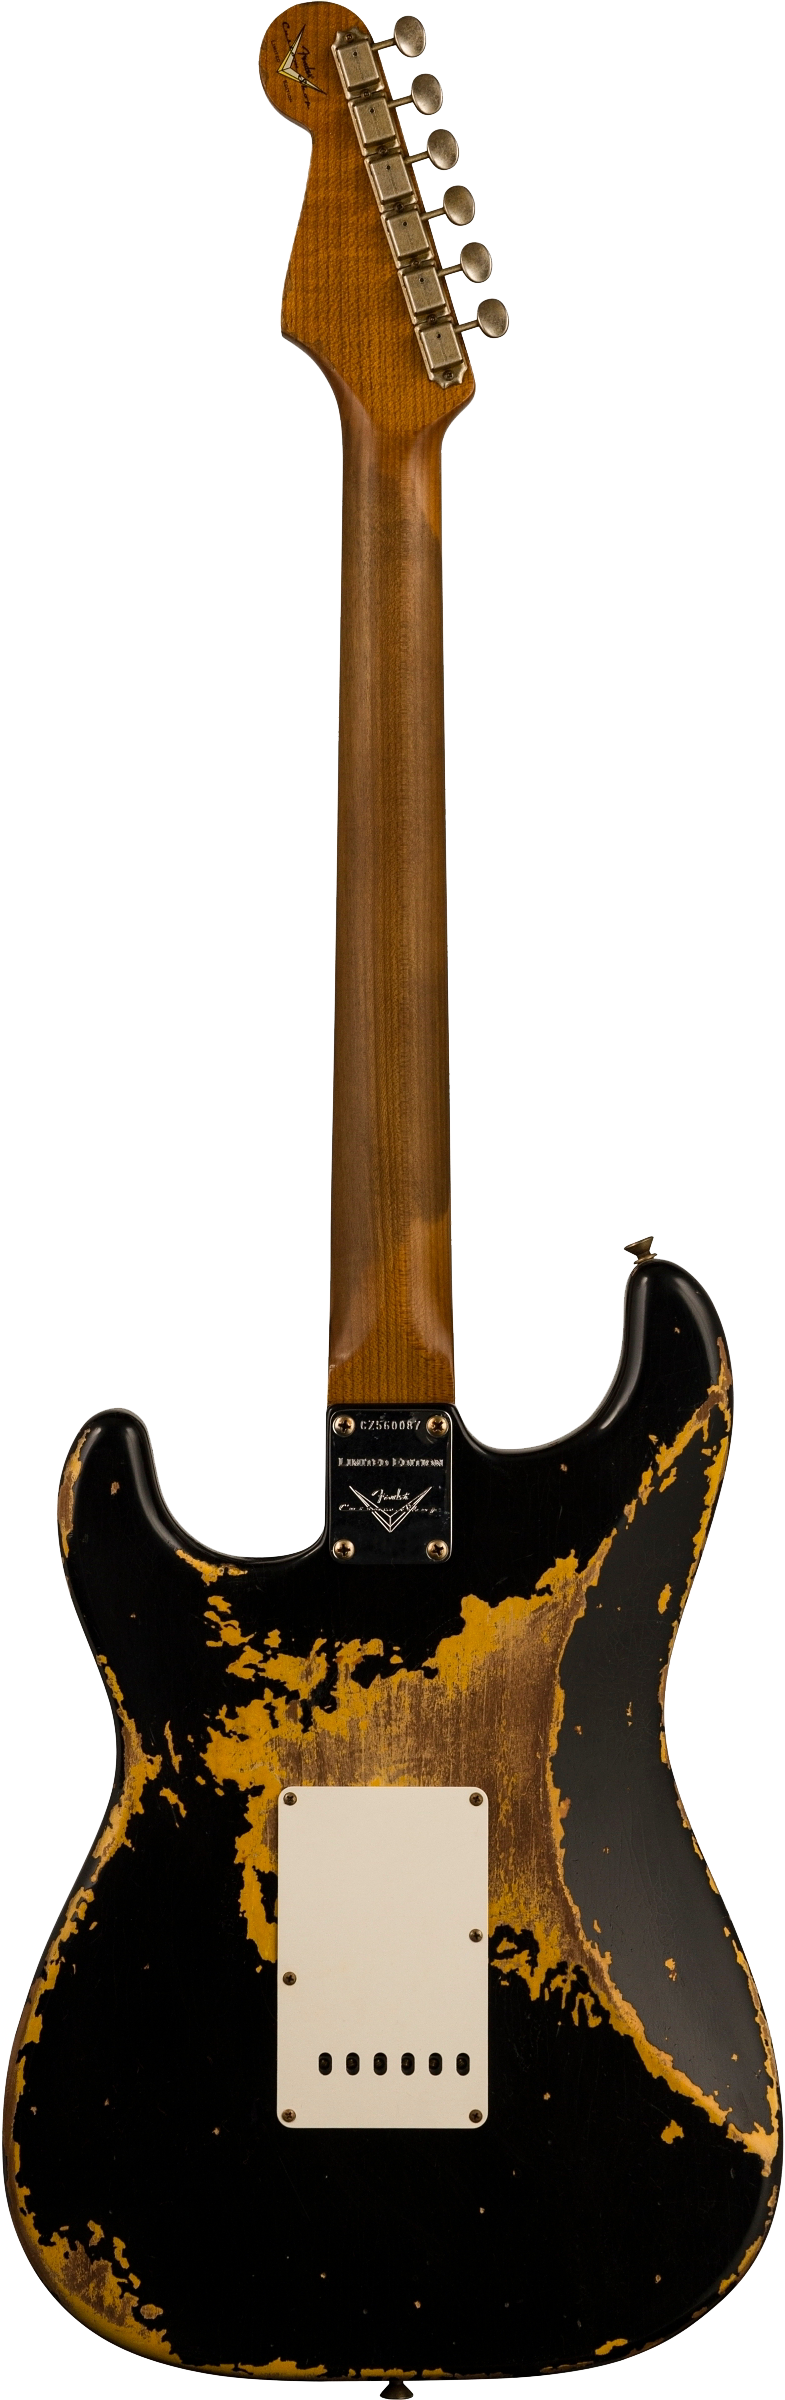 Full back shot of Fender Custom Shop Limited Edition Roasted '60 Strat Super Heavy Relic Aged Black Over 3 Color Sunburst.